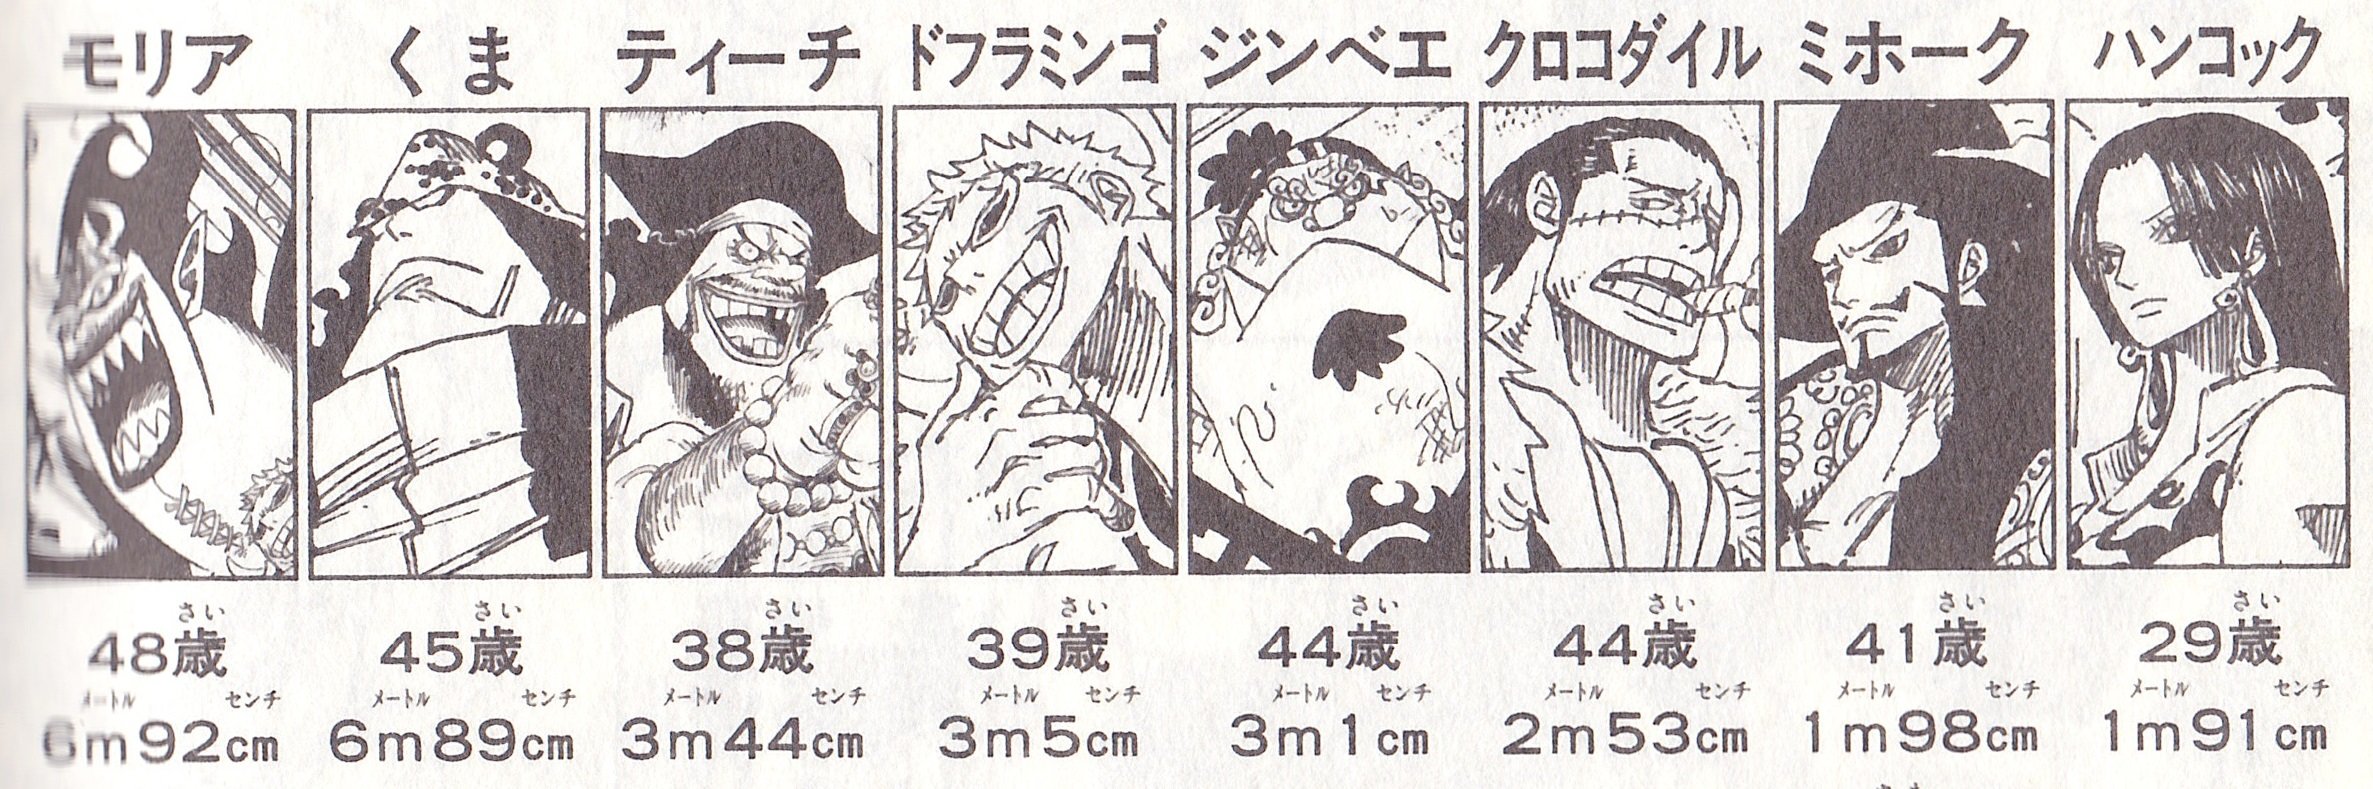 One Pieceが実写化されるらしいですがここで七武海の身長を見てみましょう どうやって再現するんですかね 話題の画像がわかるサイト